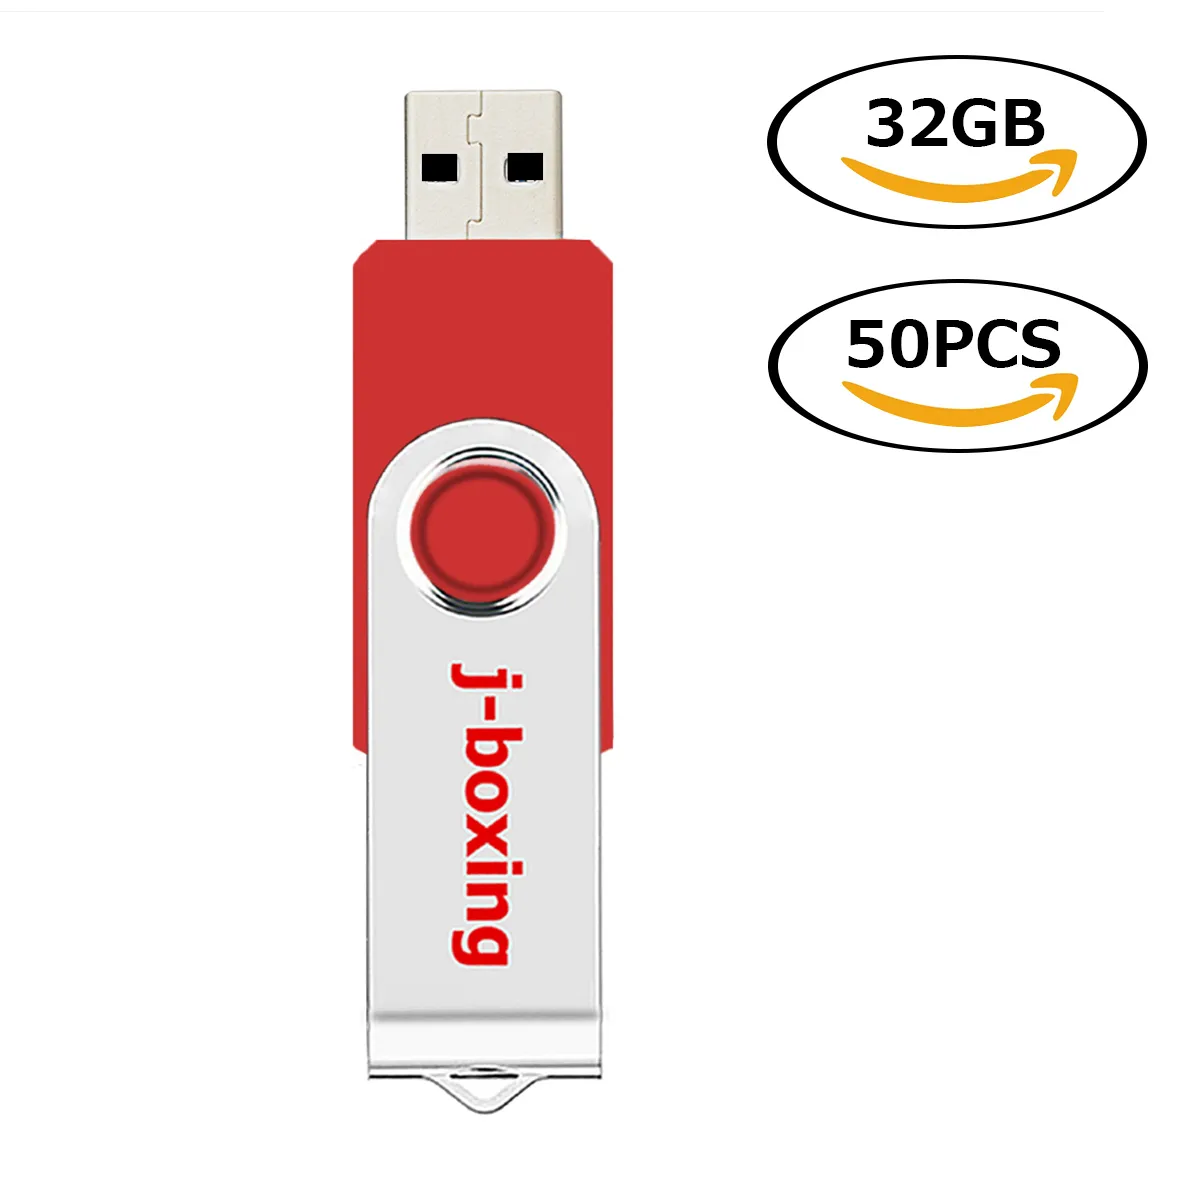 Röd roterande 32GB USB 2.0 Flash Drive Bulk 50PCS Swivel Metal Flash Memory Stick 32GB Thumb Pen Drives Förvaring för dator Laptop Tablet